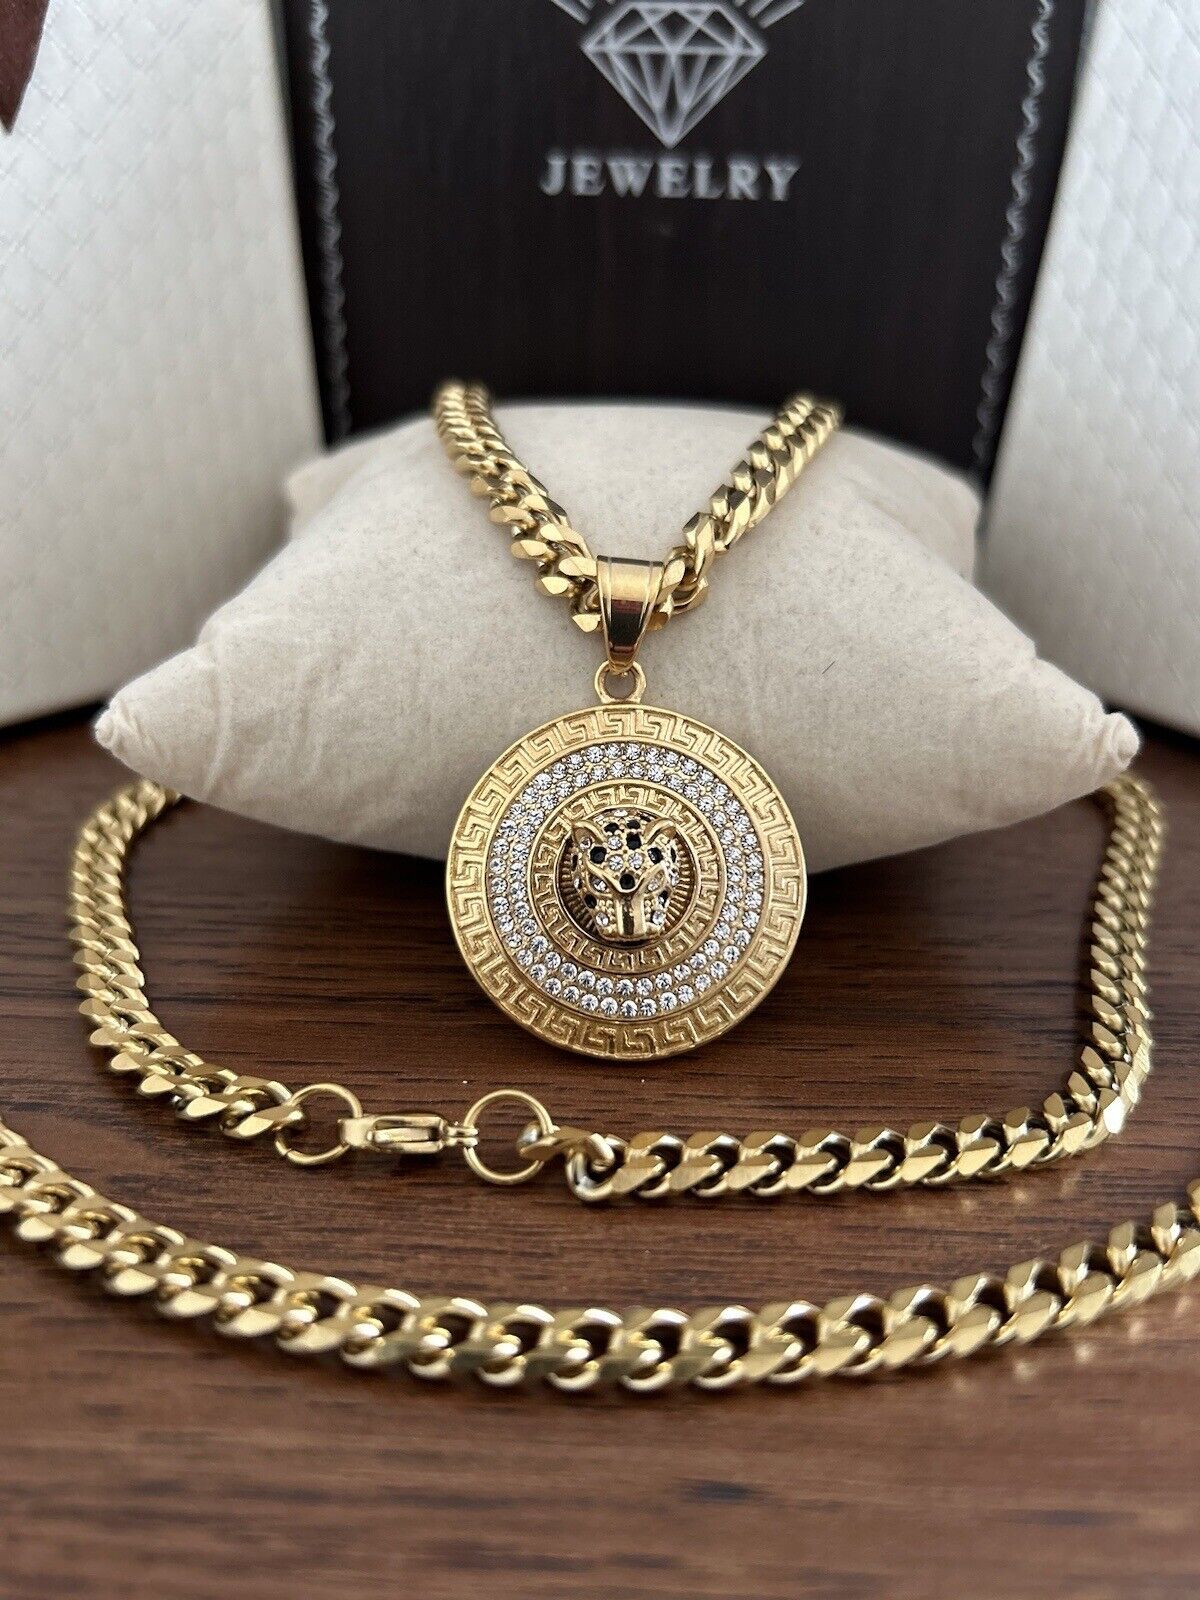 26” Cuban Links Chain & 8.5” Bracelet Set Cougar  Pendant, 18k Gold Filled